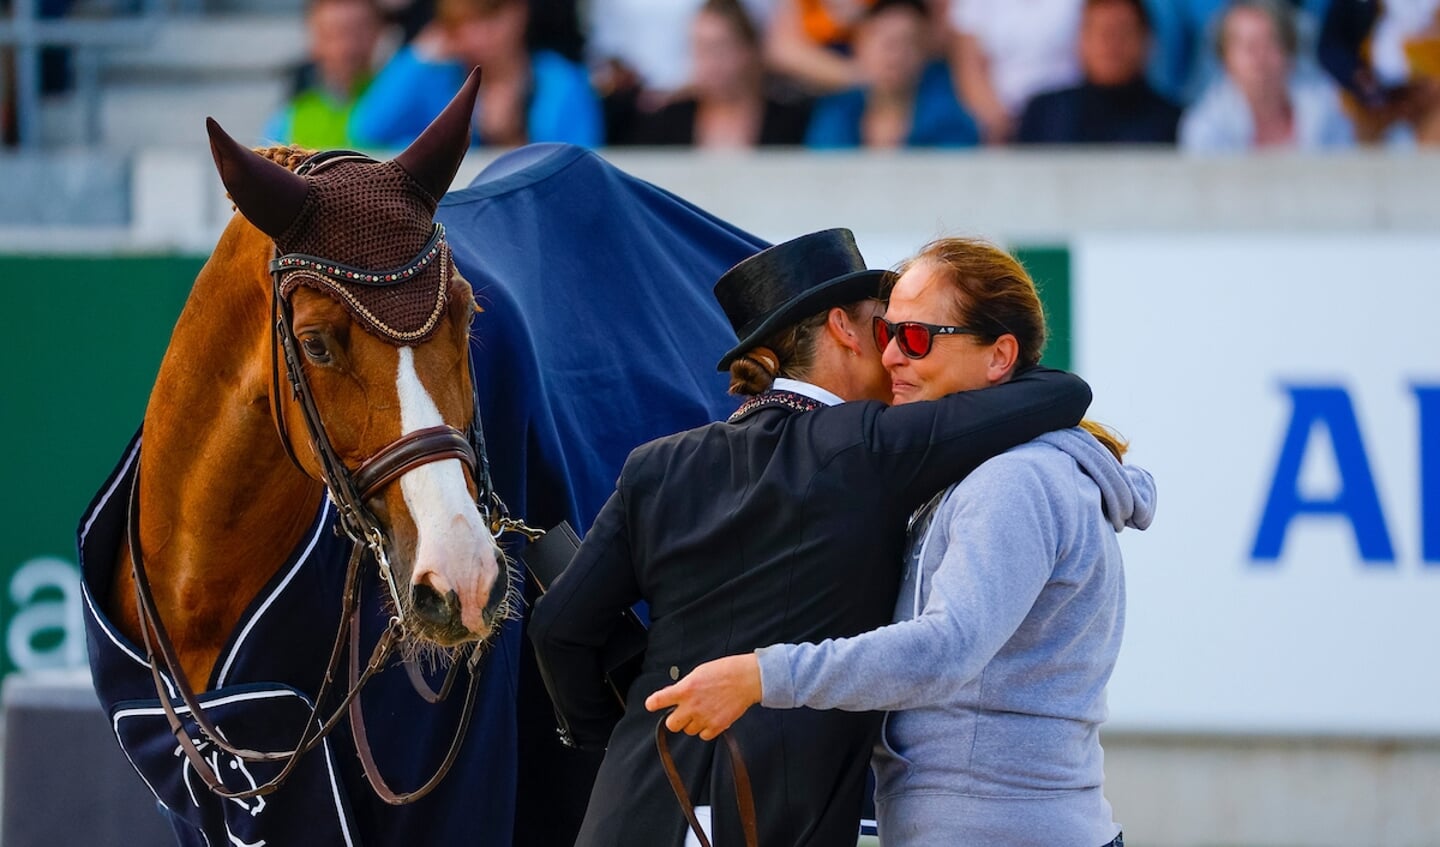 Isabell Werth - Bella Rose
World Equestrian Festival CHIO Aachen 2022
© DigiShots